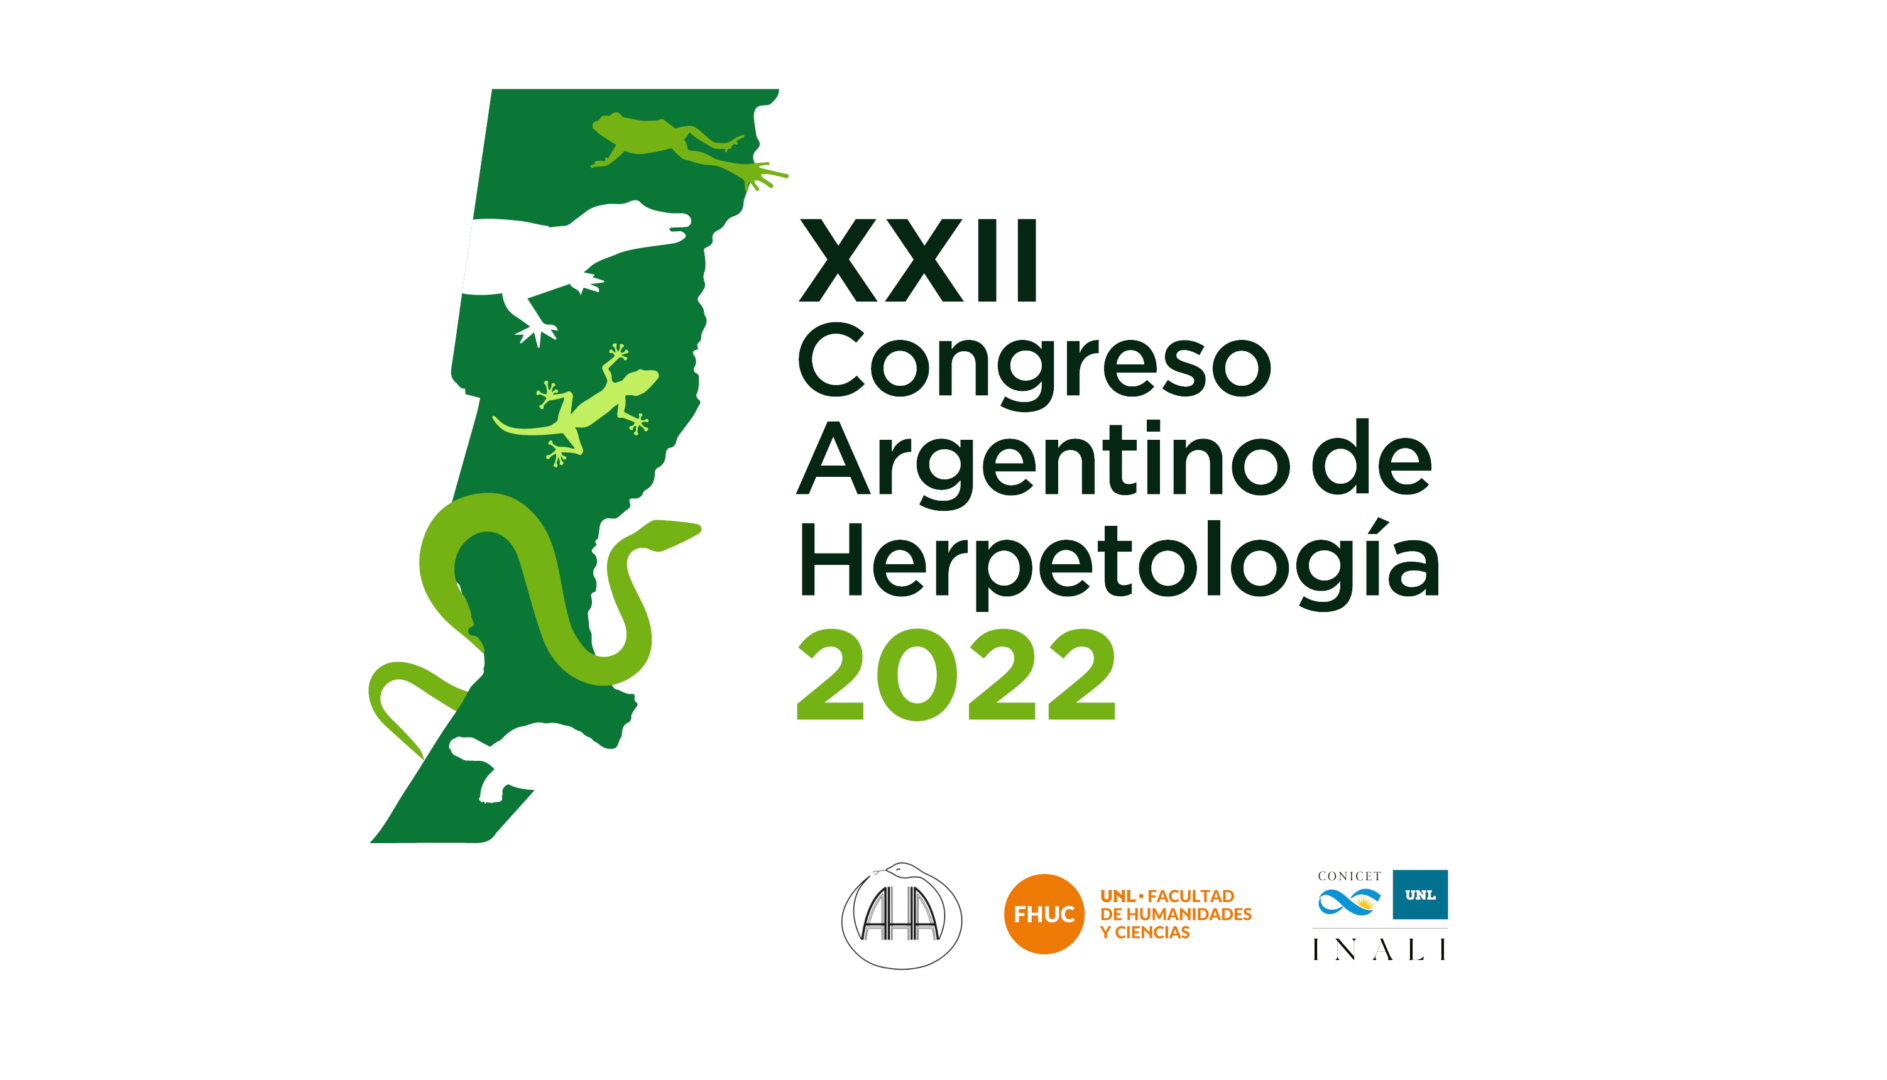 XXII Congreso Argentino de Herpetología